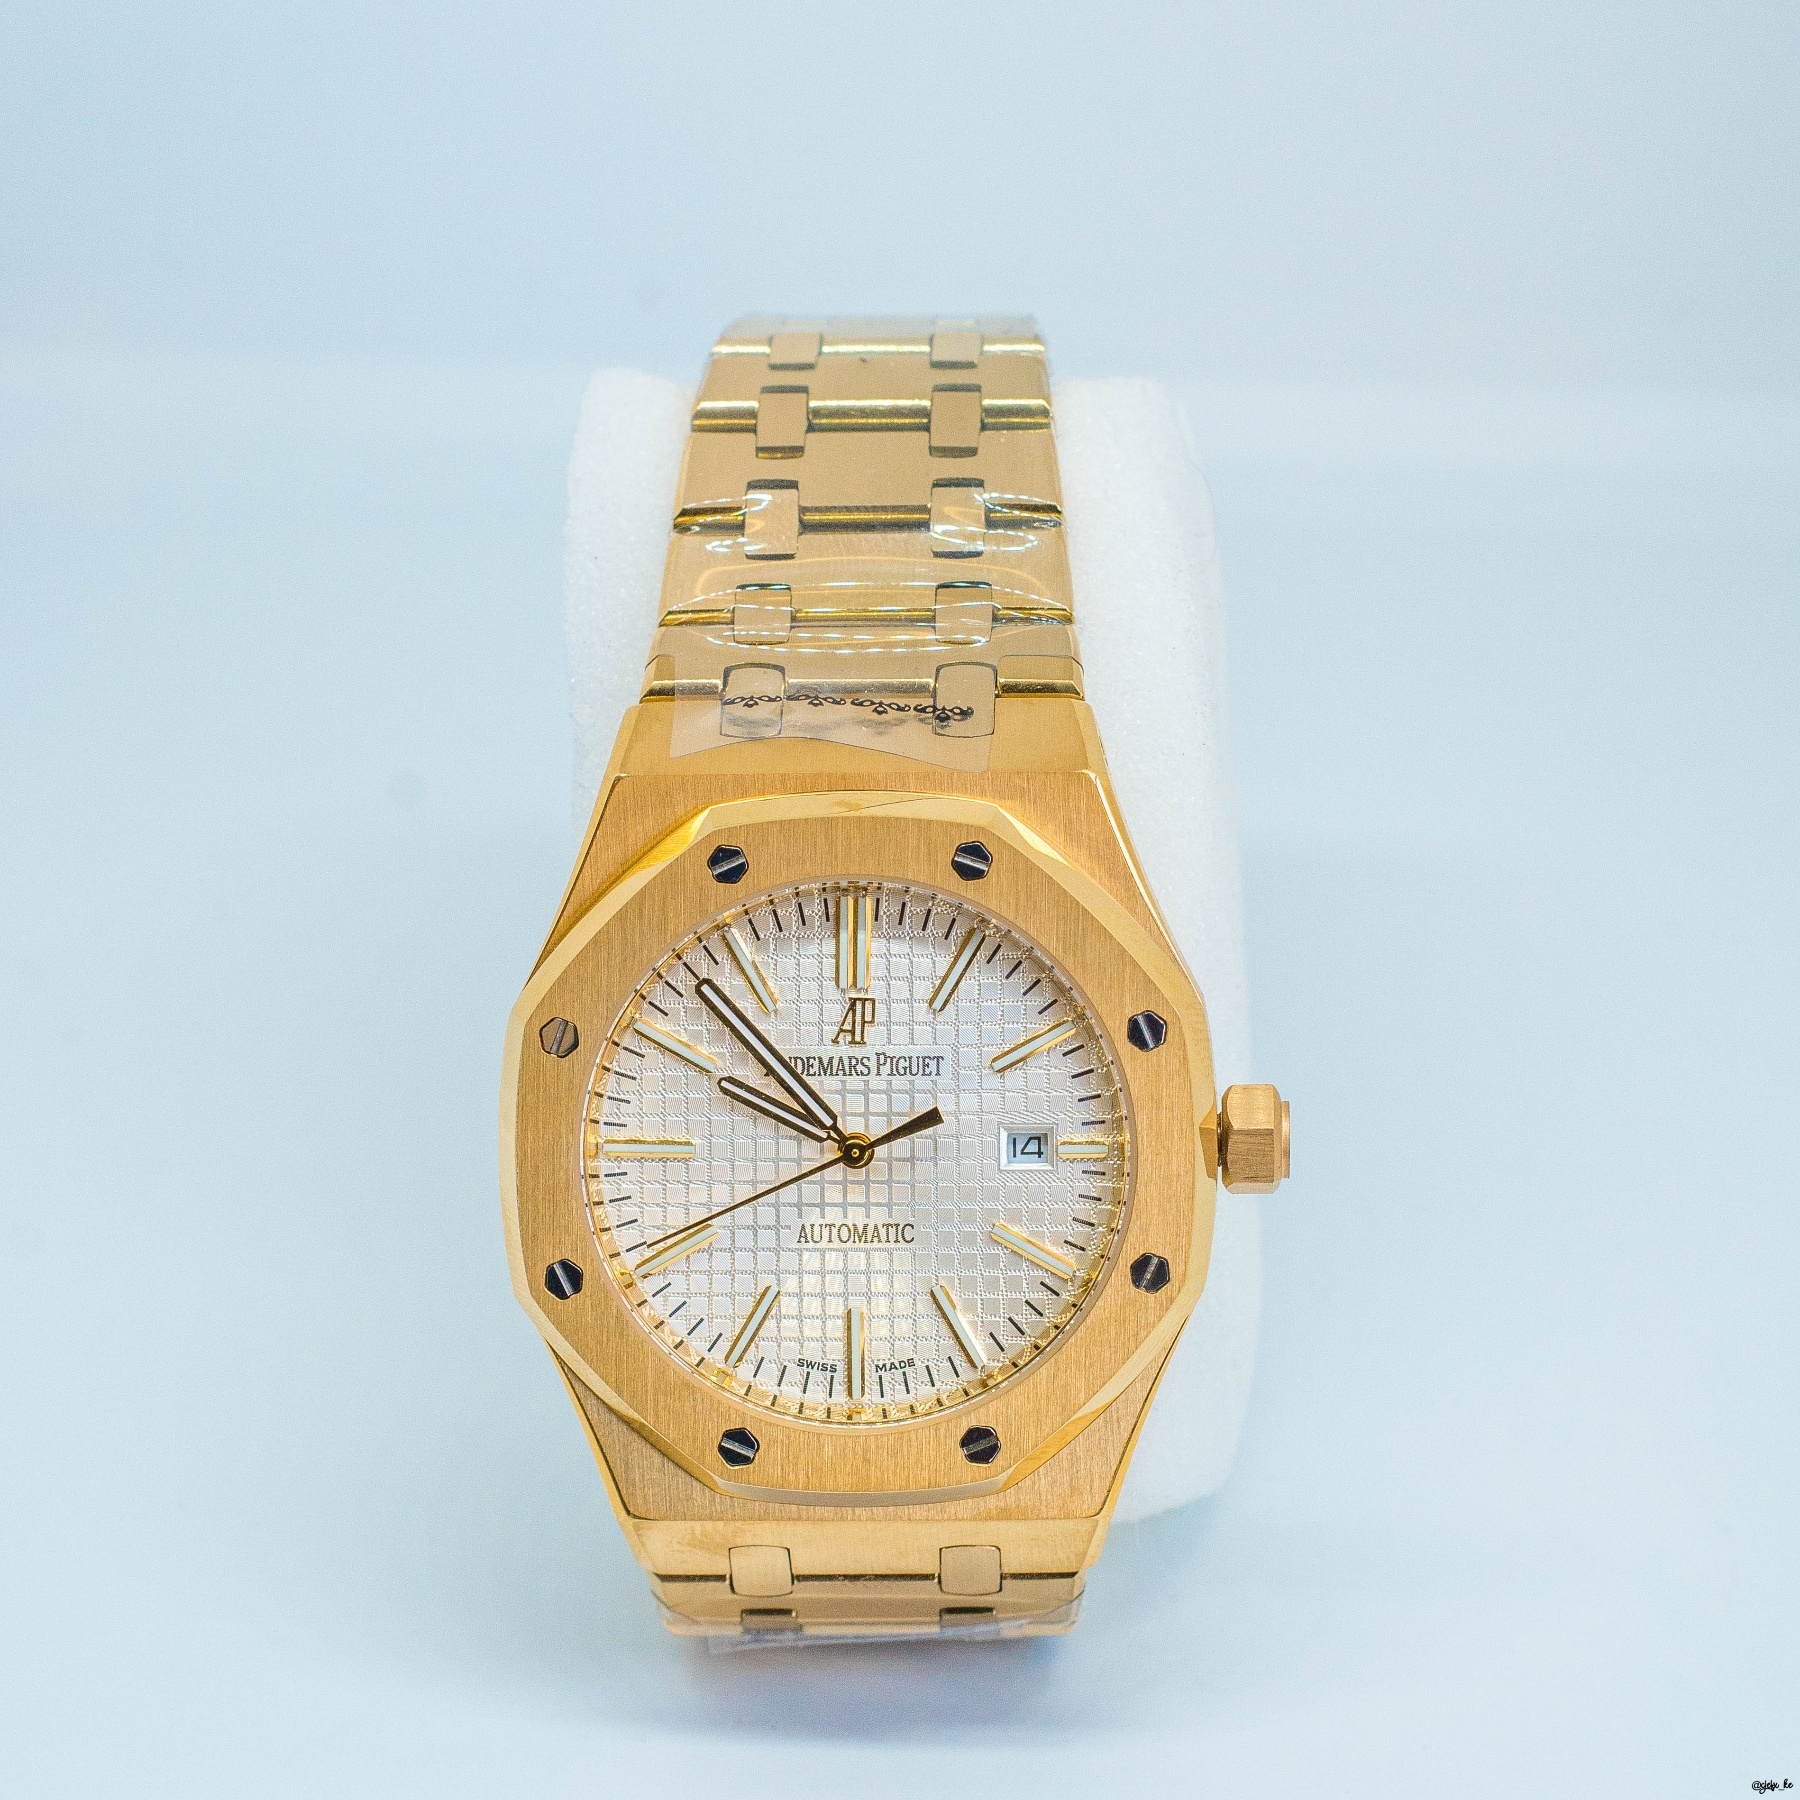 Audemars Piguet Royal Oak 18 kt Yellow Gold Men's Watch for sale in Nairobi,Kenya contact 0724681225